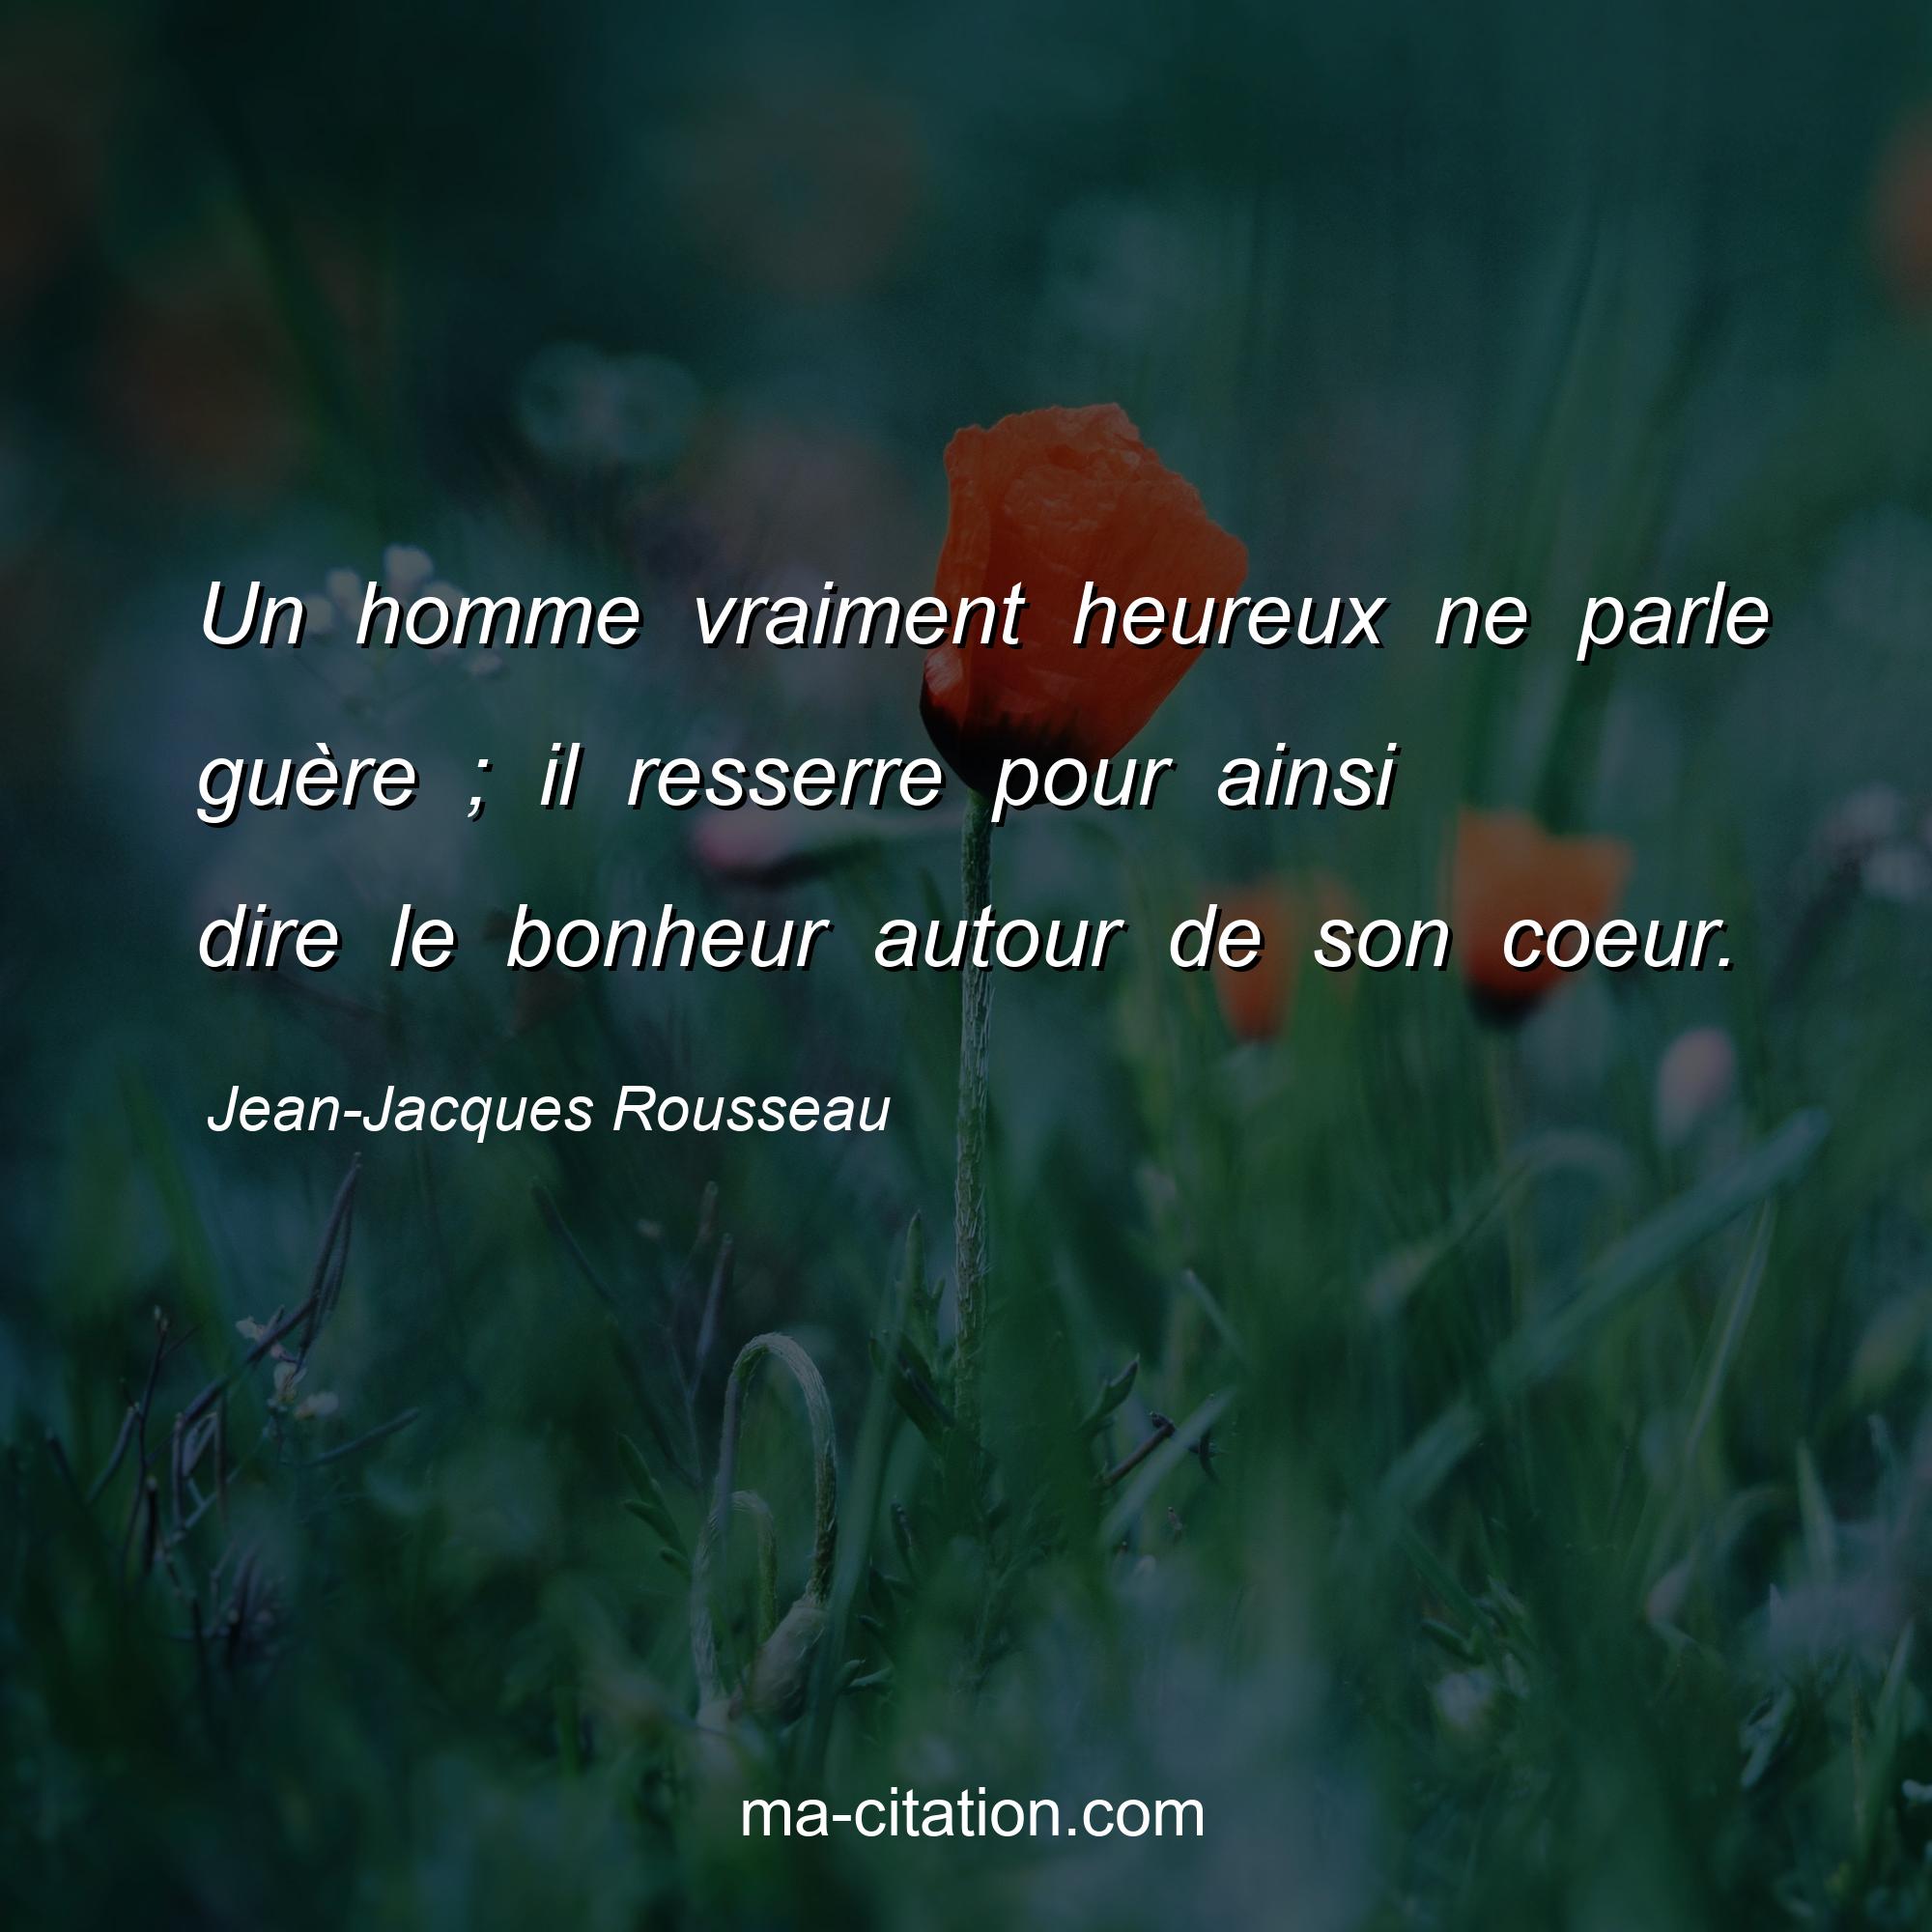 Jean-Jacques Rousseau : Un homme vraiment heureux ne parle guère ; il resserre pour ainsi dire le bonheur autour de son coeur.